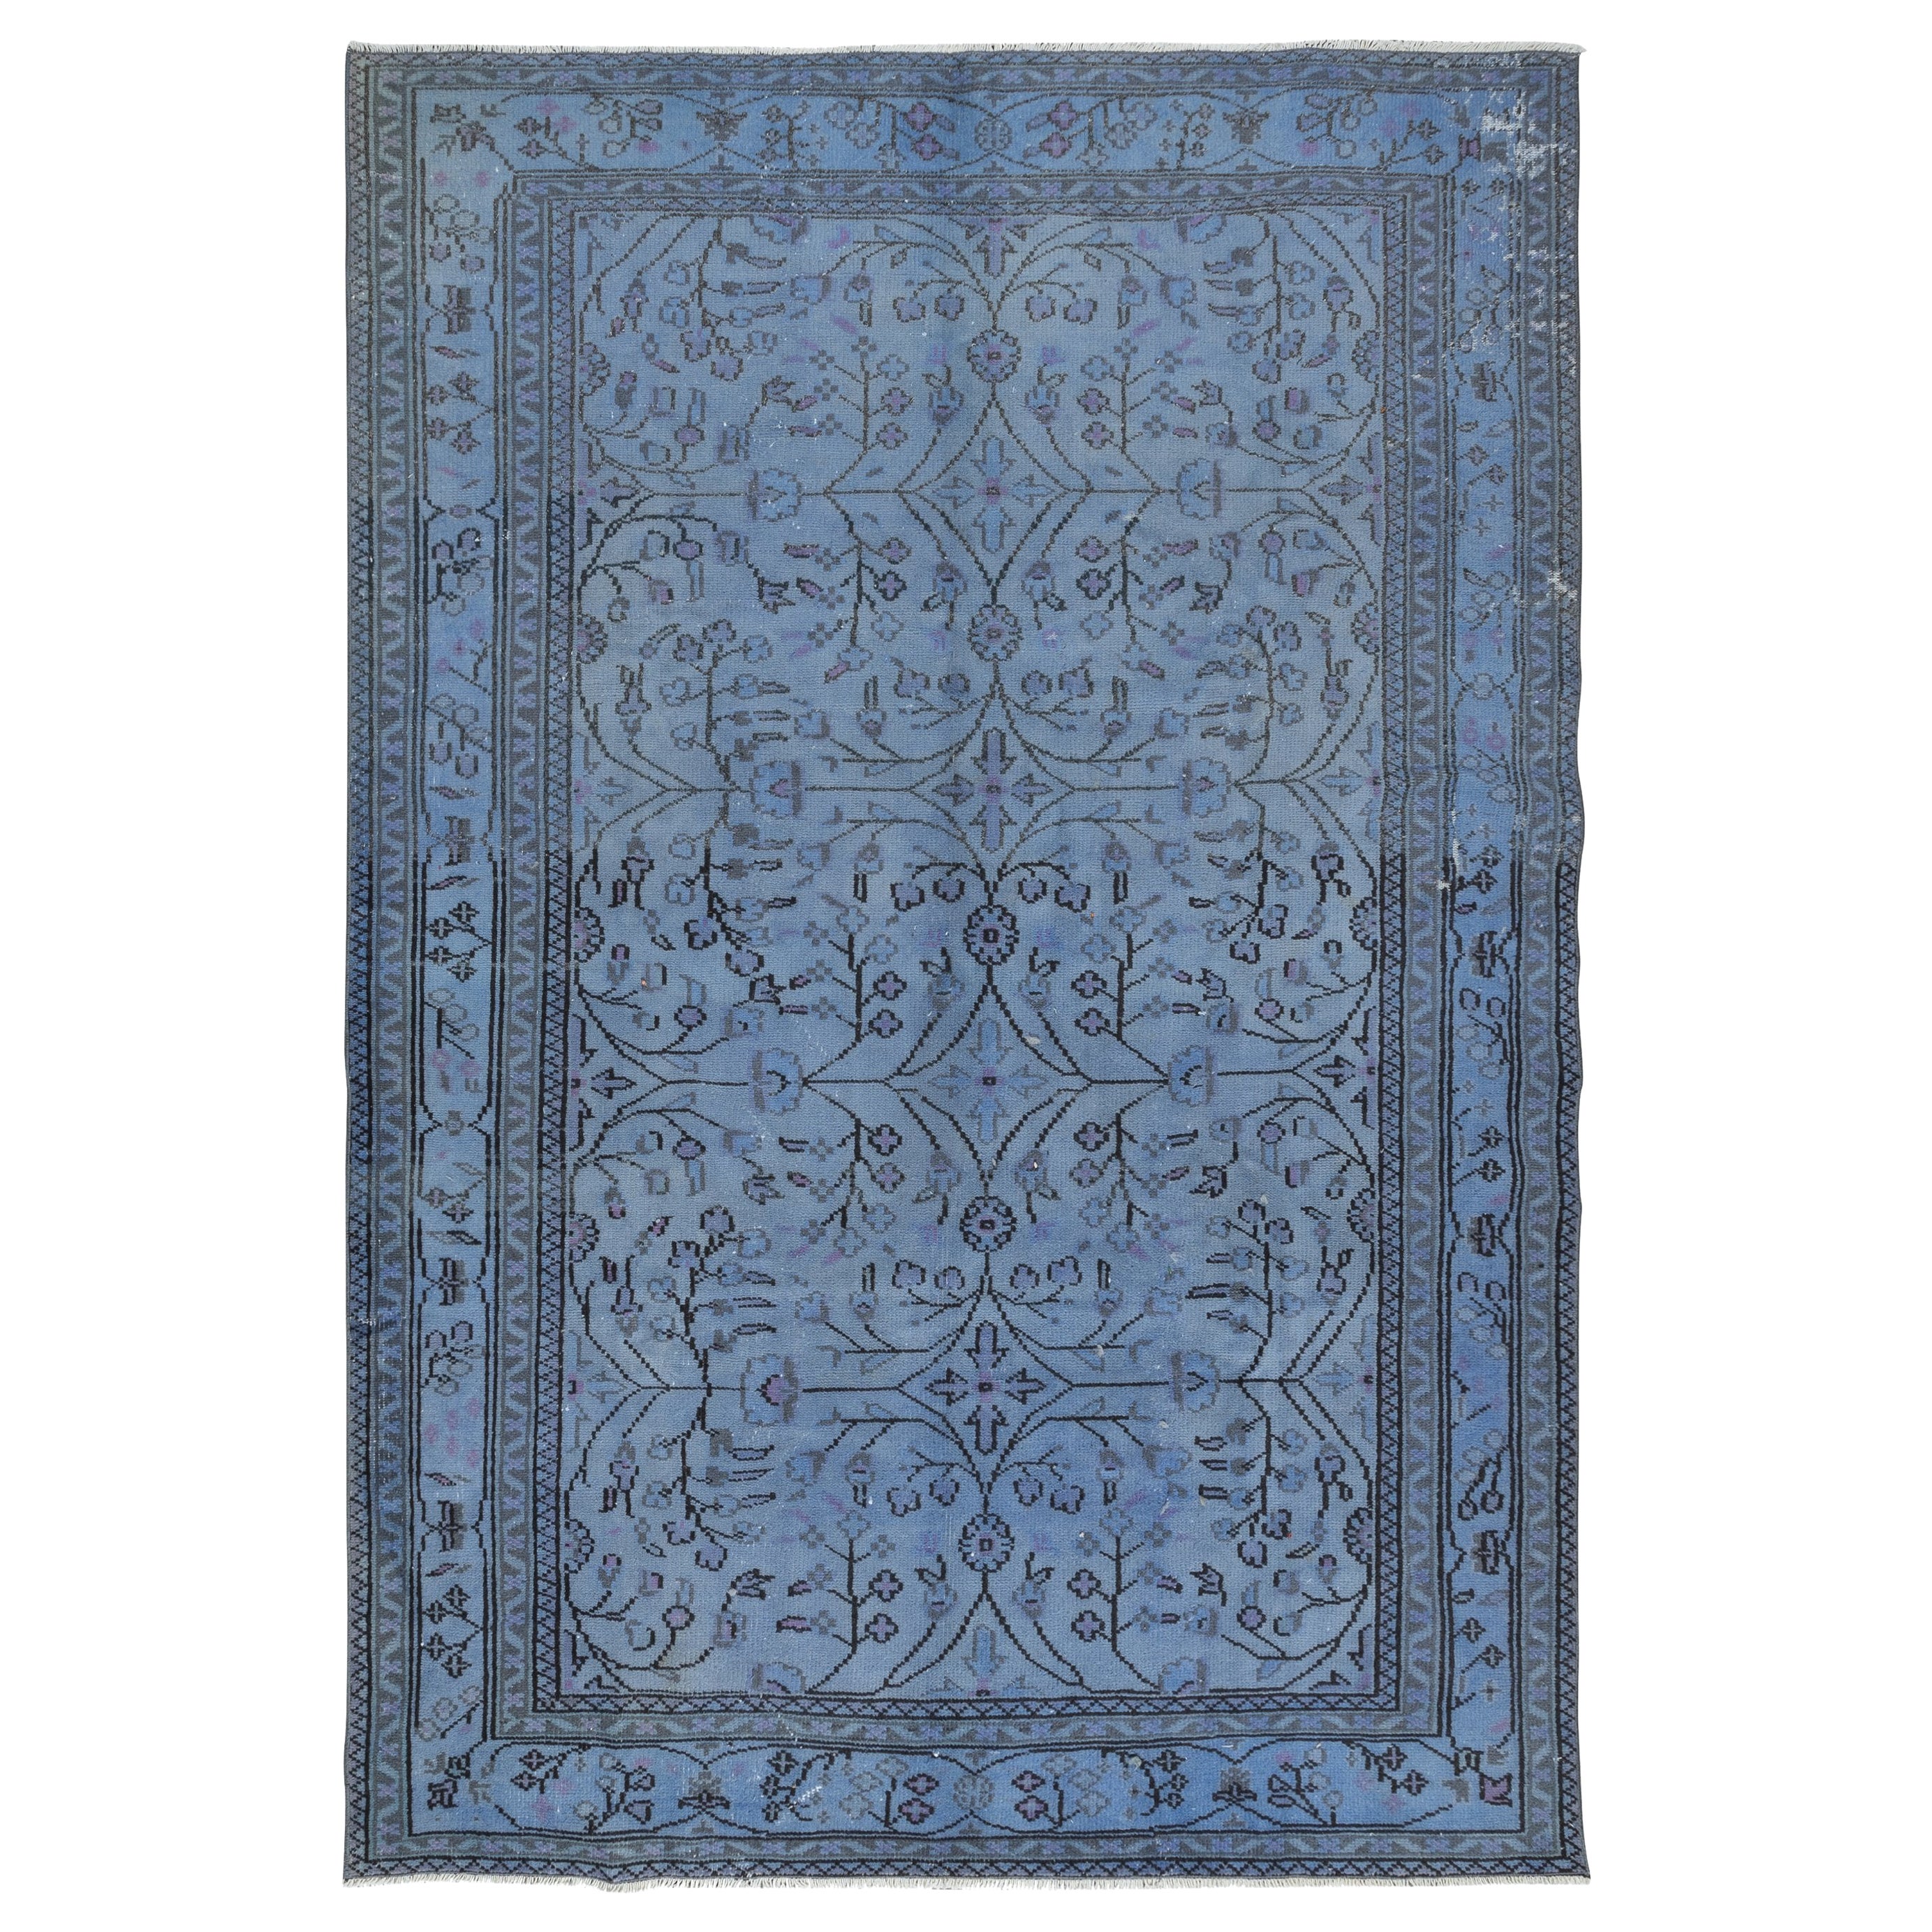 7x10 Ft Moderner handgefertigter Teppich in Blau überzogen, einzigartiger türkischer Teppich, Unikat